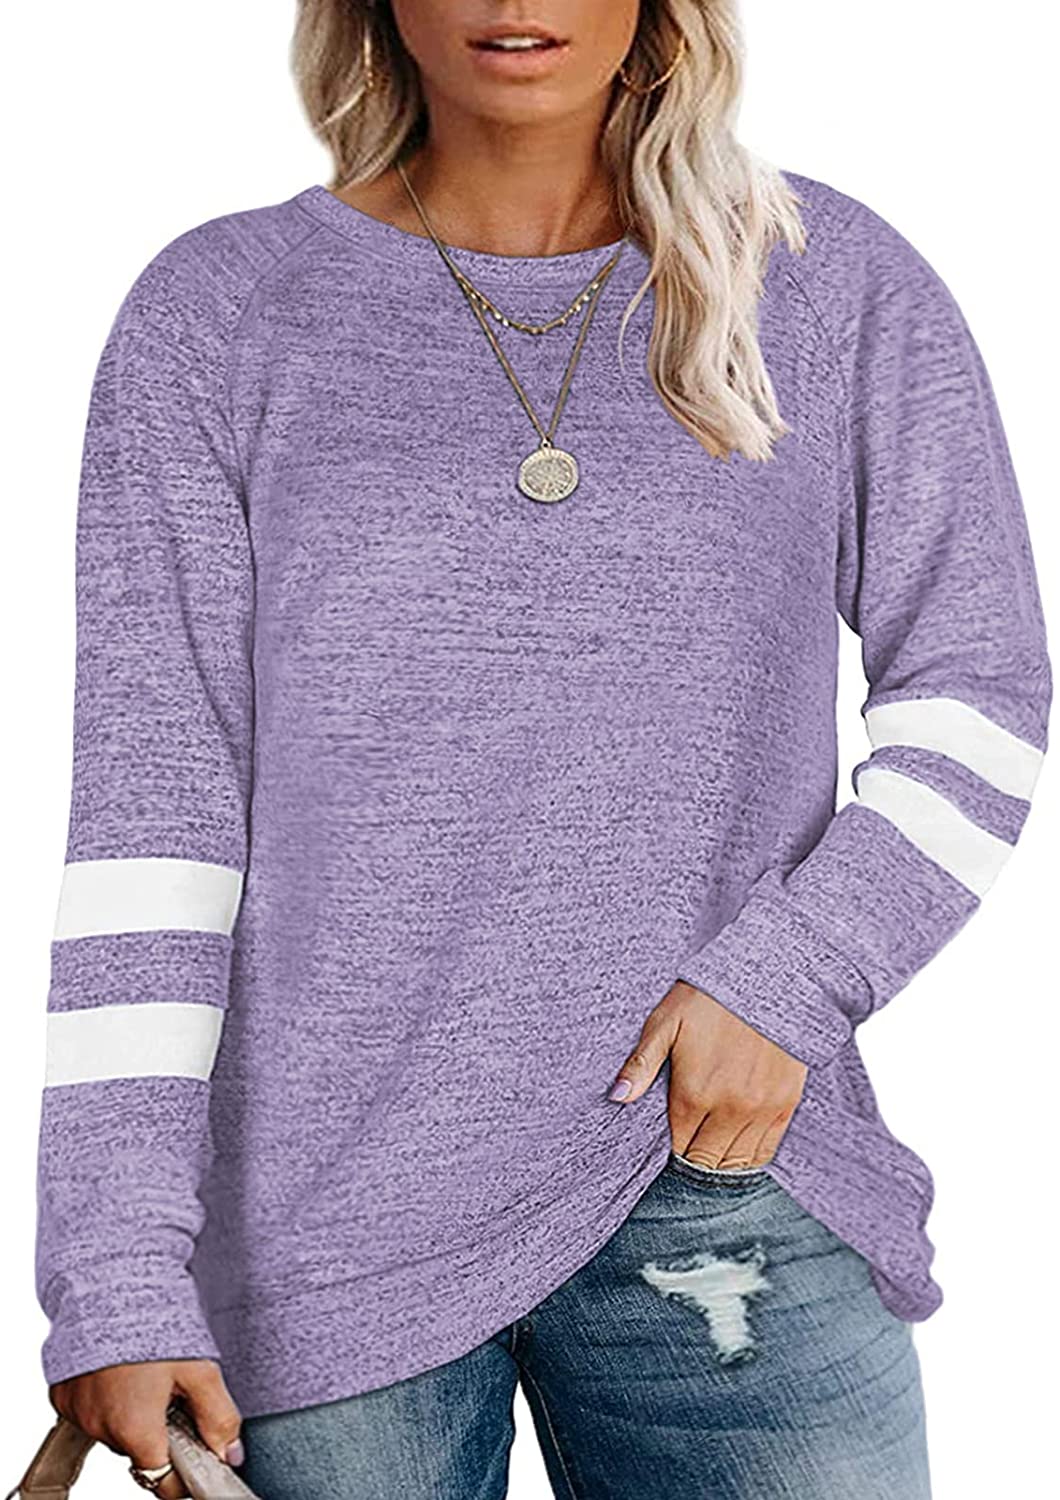 DOLNINE Plus Size Sweatshirts for Women Long Sleeve Oversized Tunic Tops 